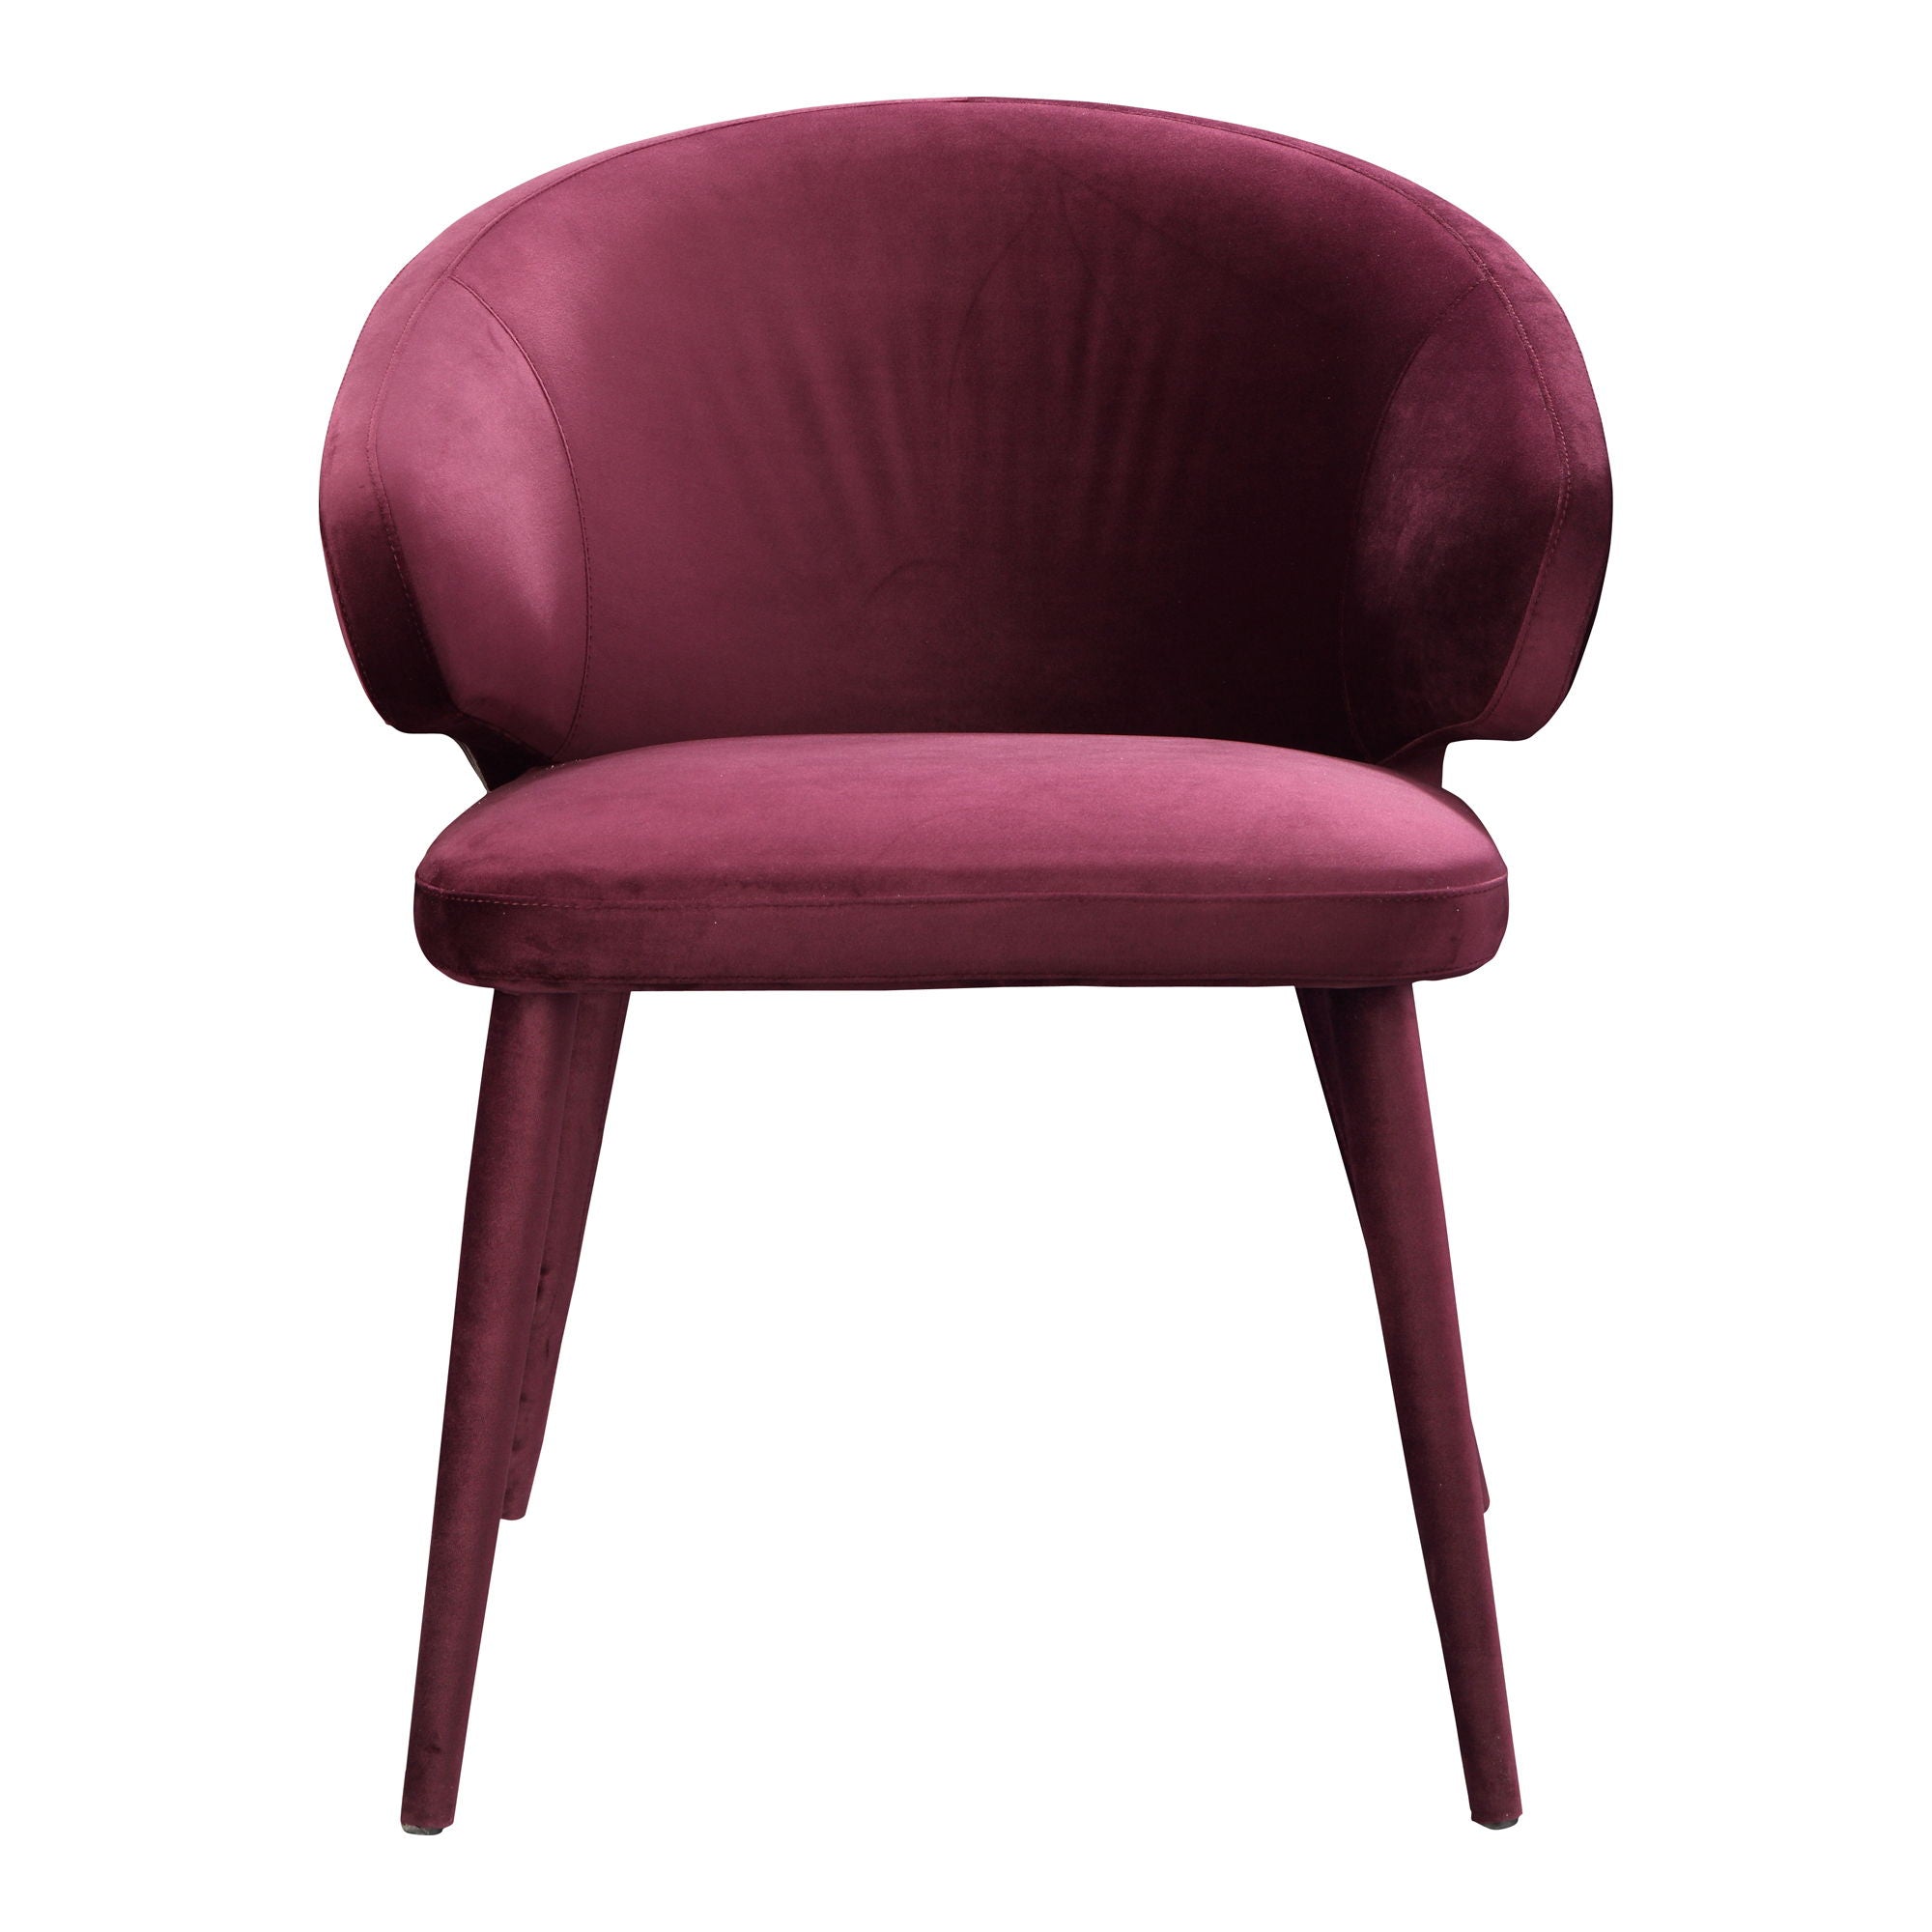 Stewart - Dining Chair - Purple